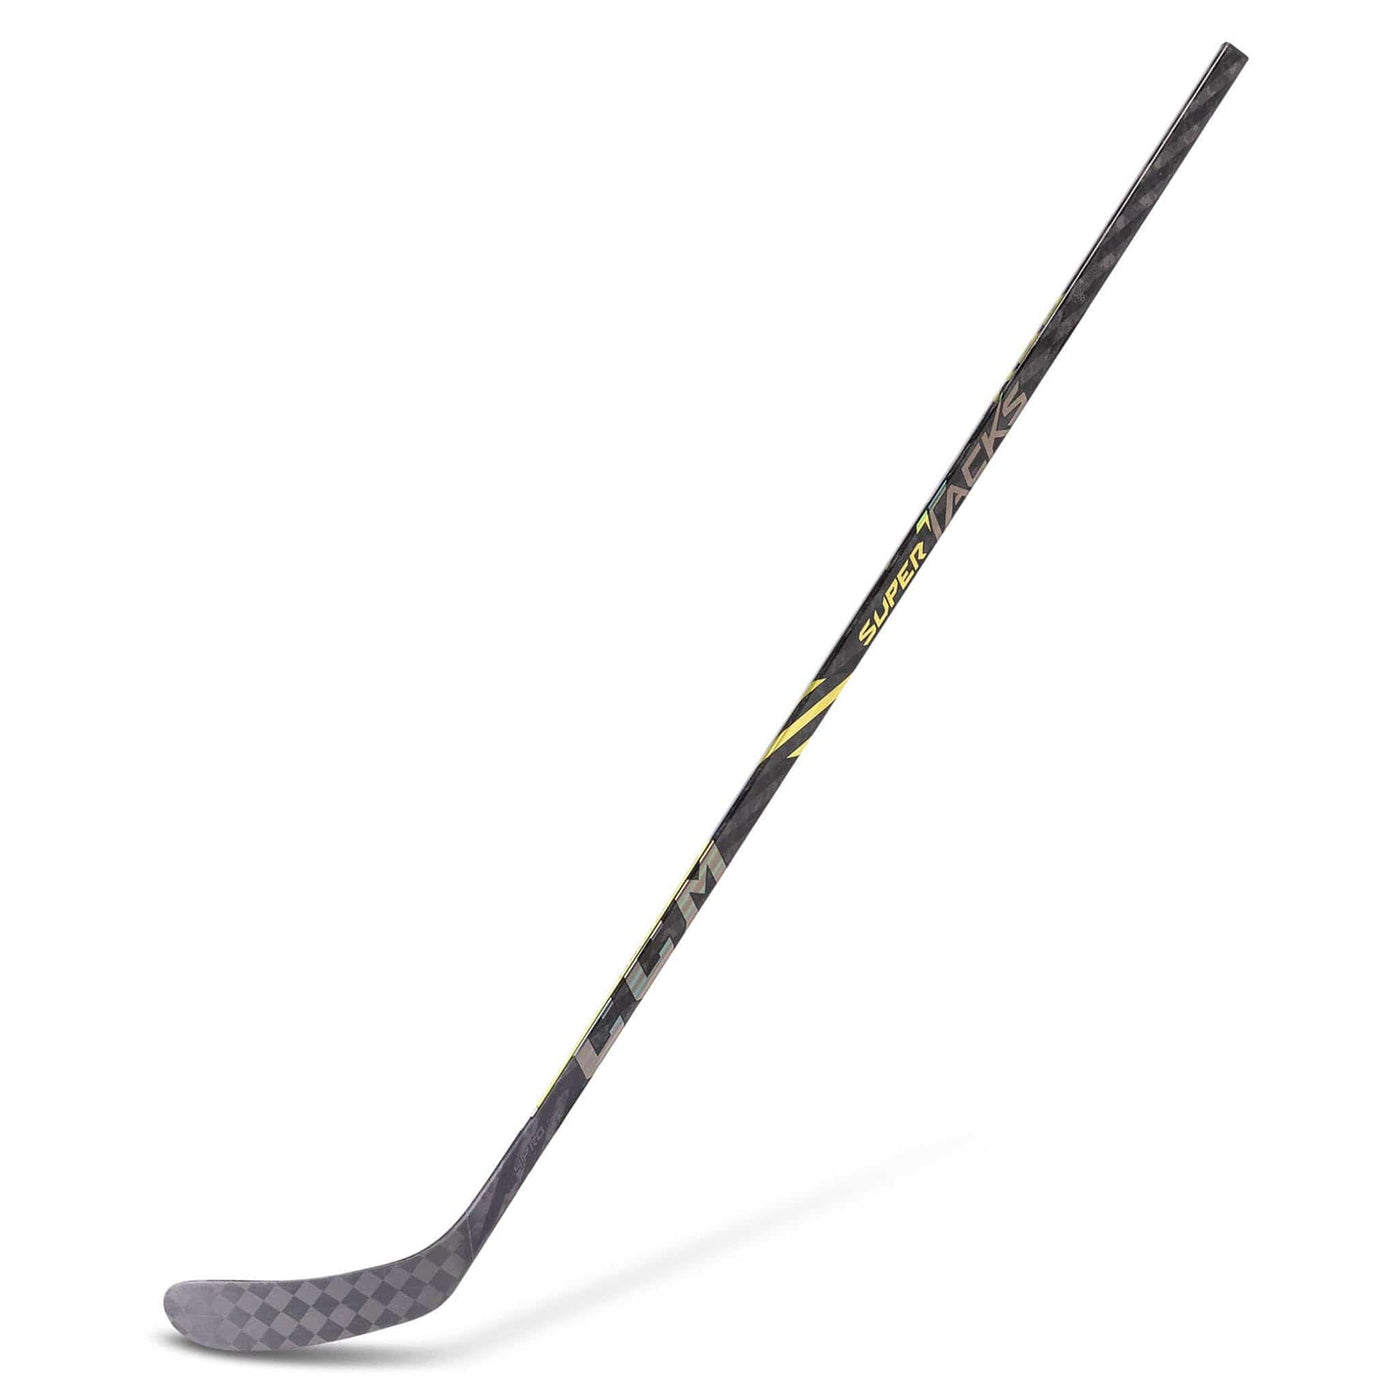 CCM Super Tacks AS4 Pro Junior Hockey Stick